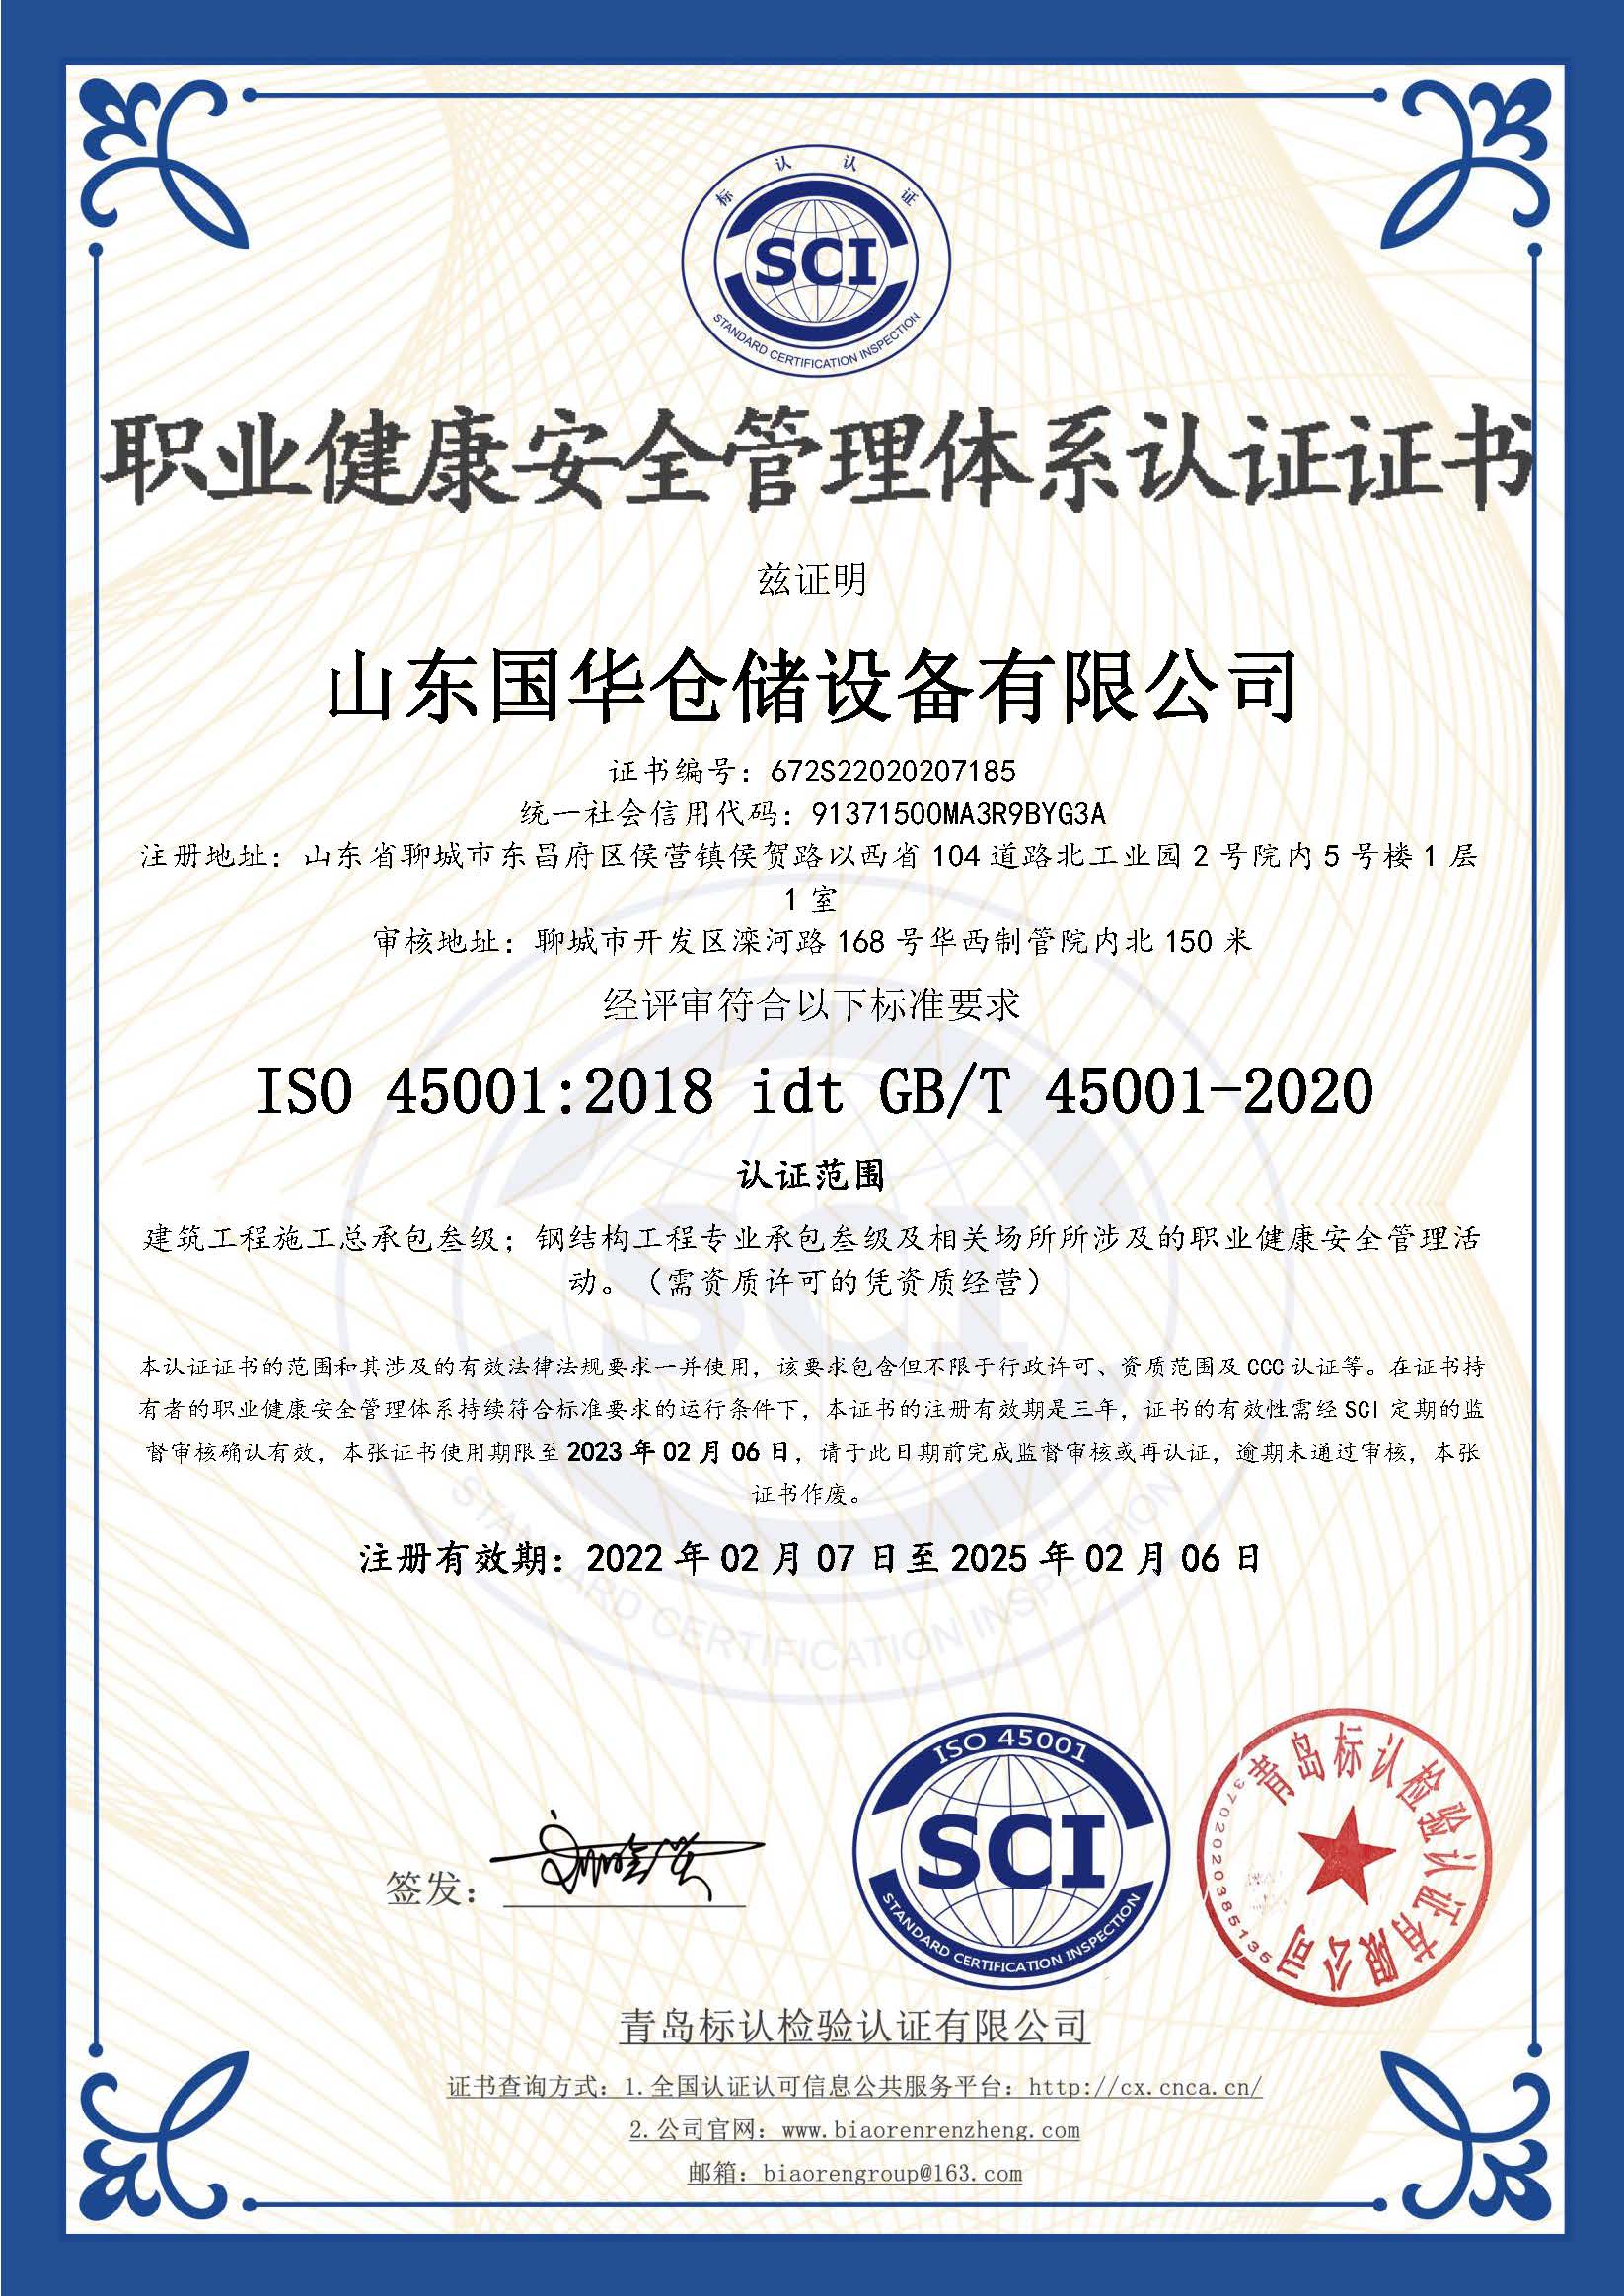 武汉钢板仓职业健康安全管理体系认证证书